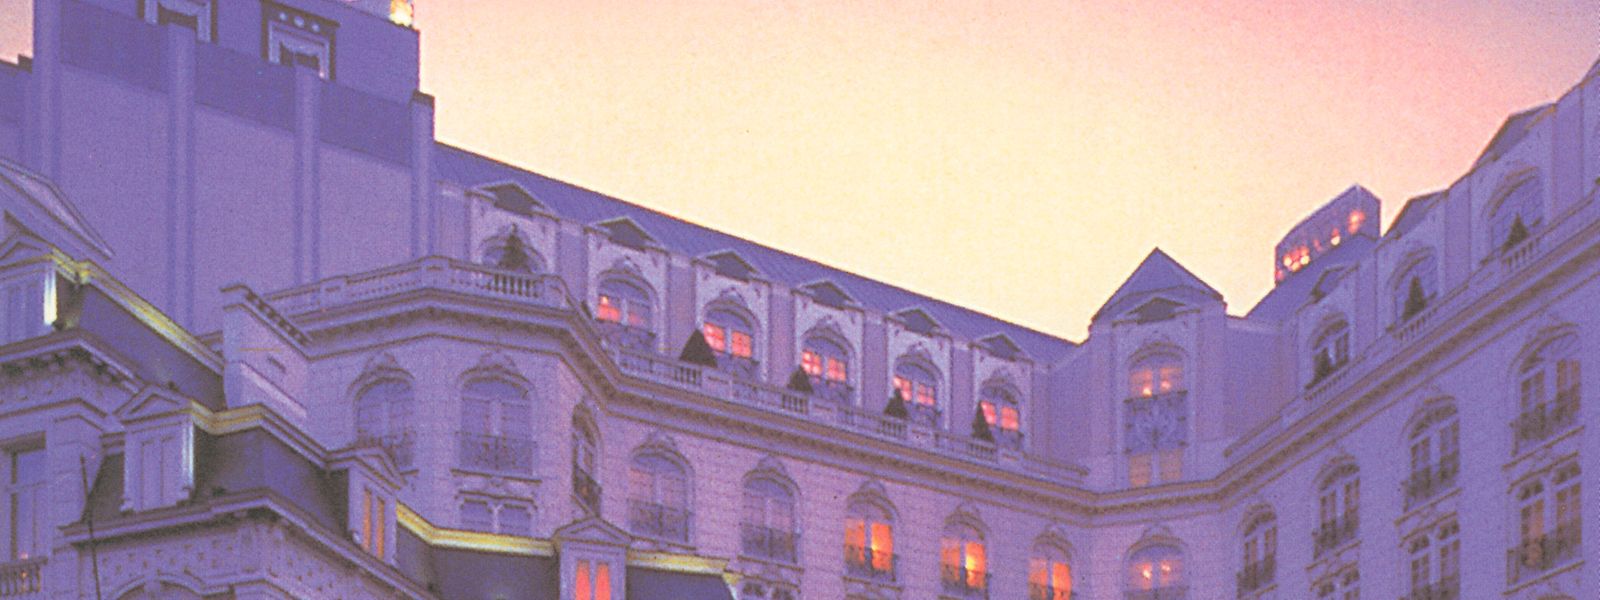 Wie aus tausenduneiner Nacht? Die Fassade des Brüsseler Hotels Conrad.